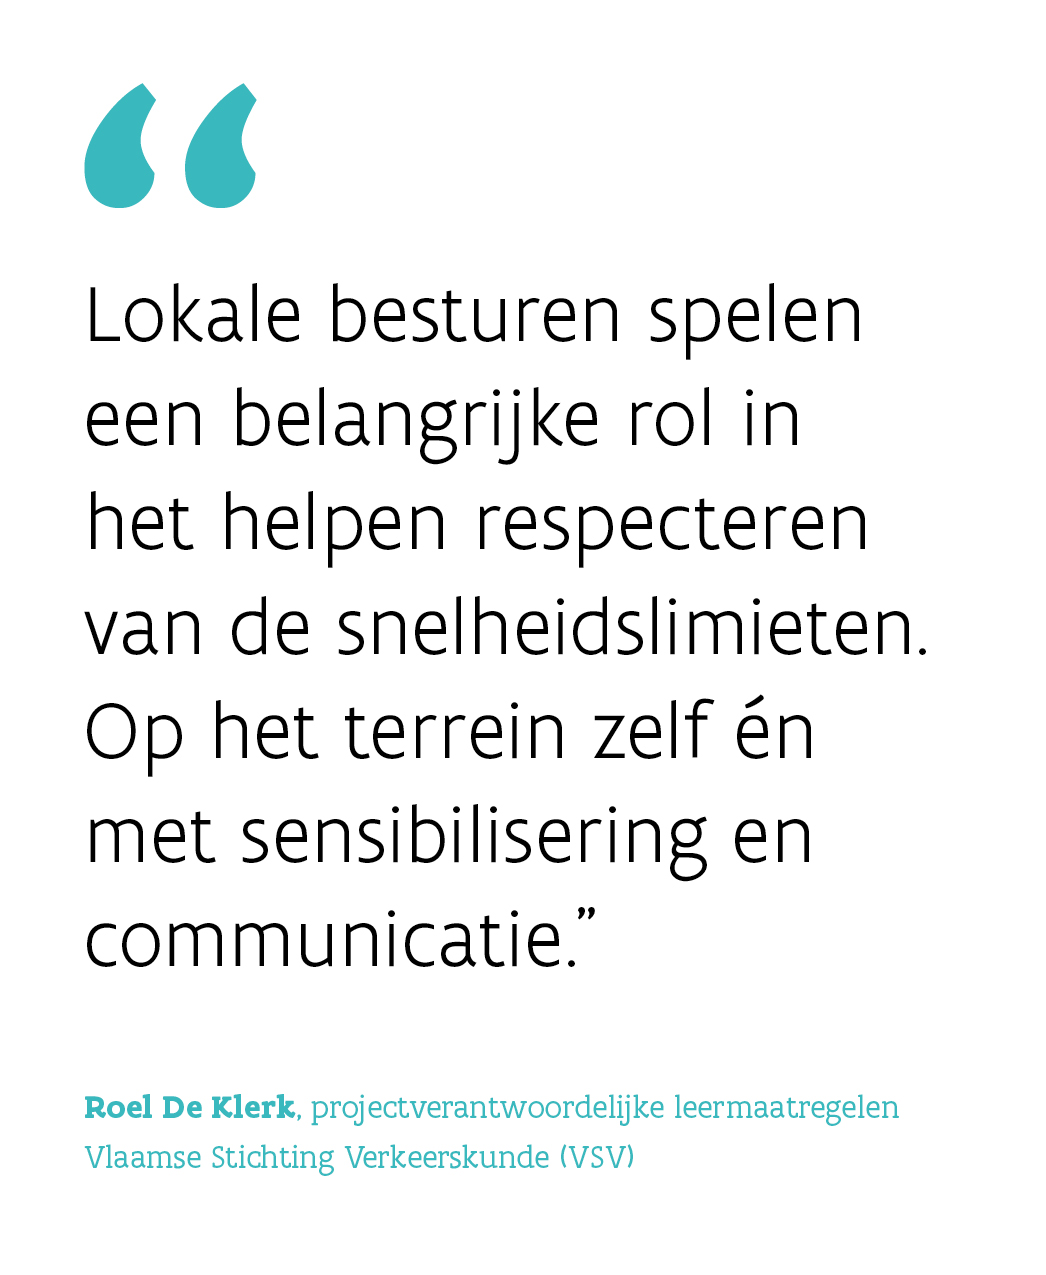 Roel De Klerk, projectverantwoordelijke leermaatregelen bij de Vlaamse Stichting Verkeerskunde (VSV) citaat